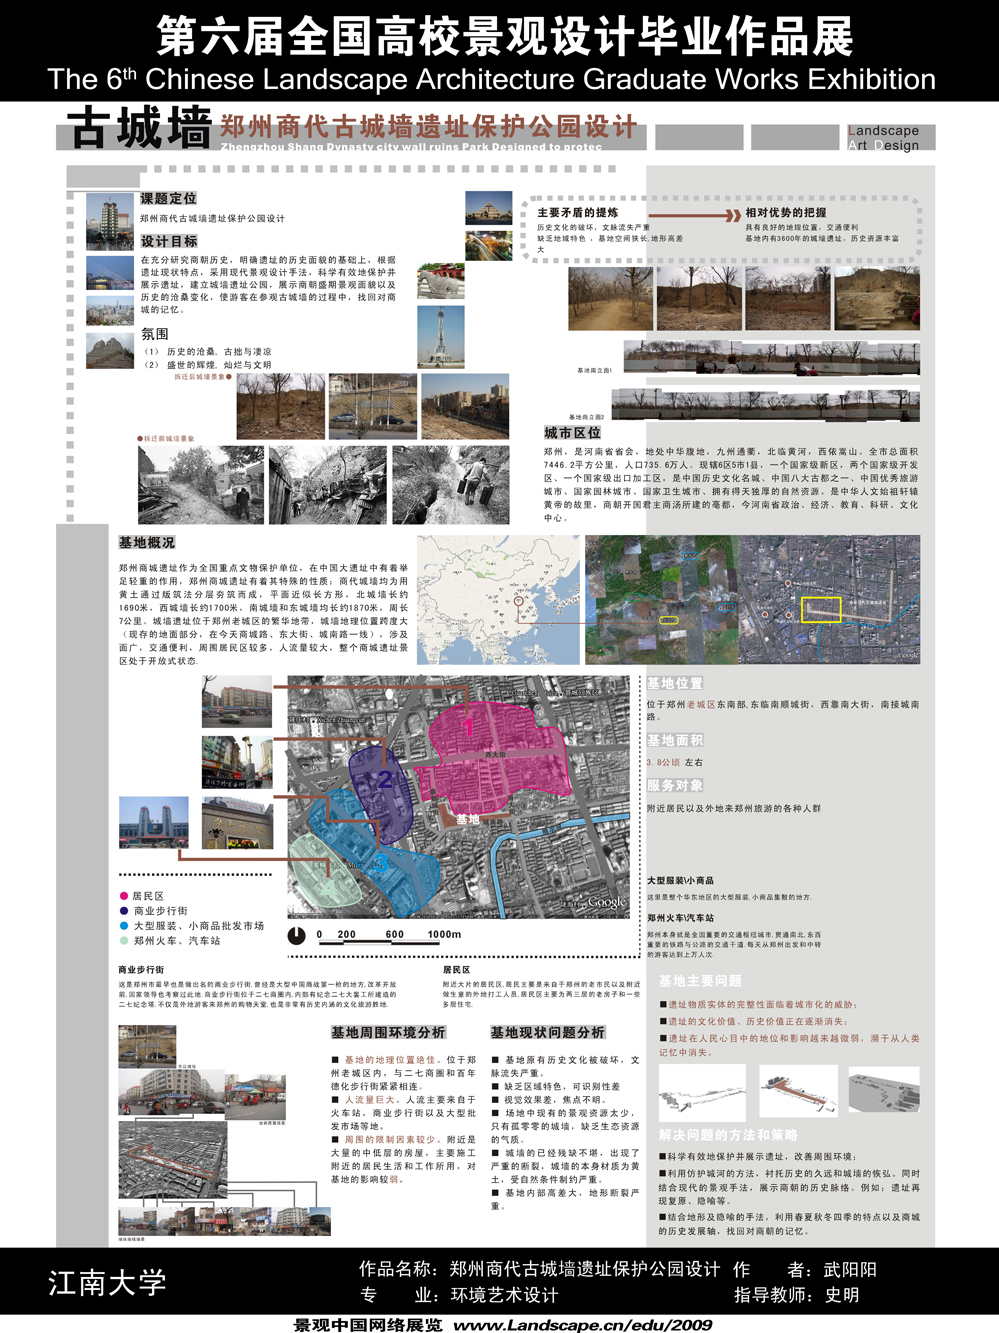 郑州商代古城墙遗址保护公园设计-1